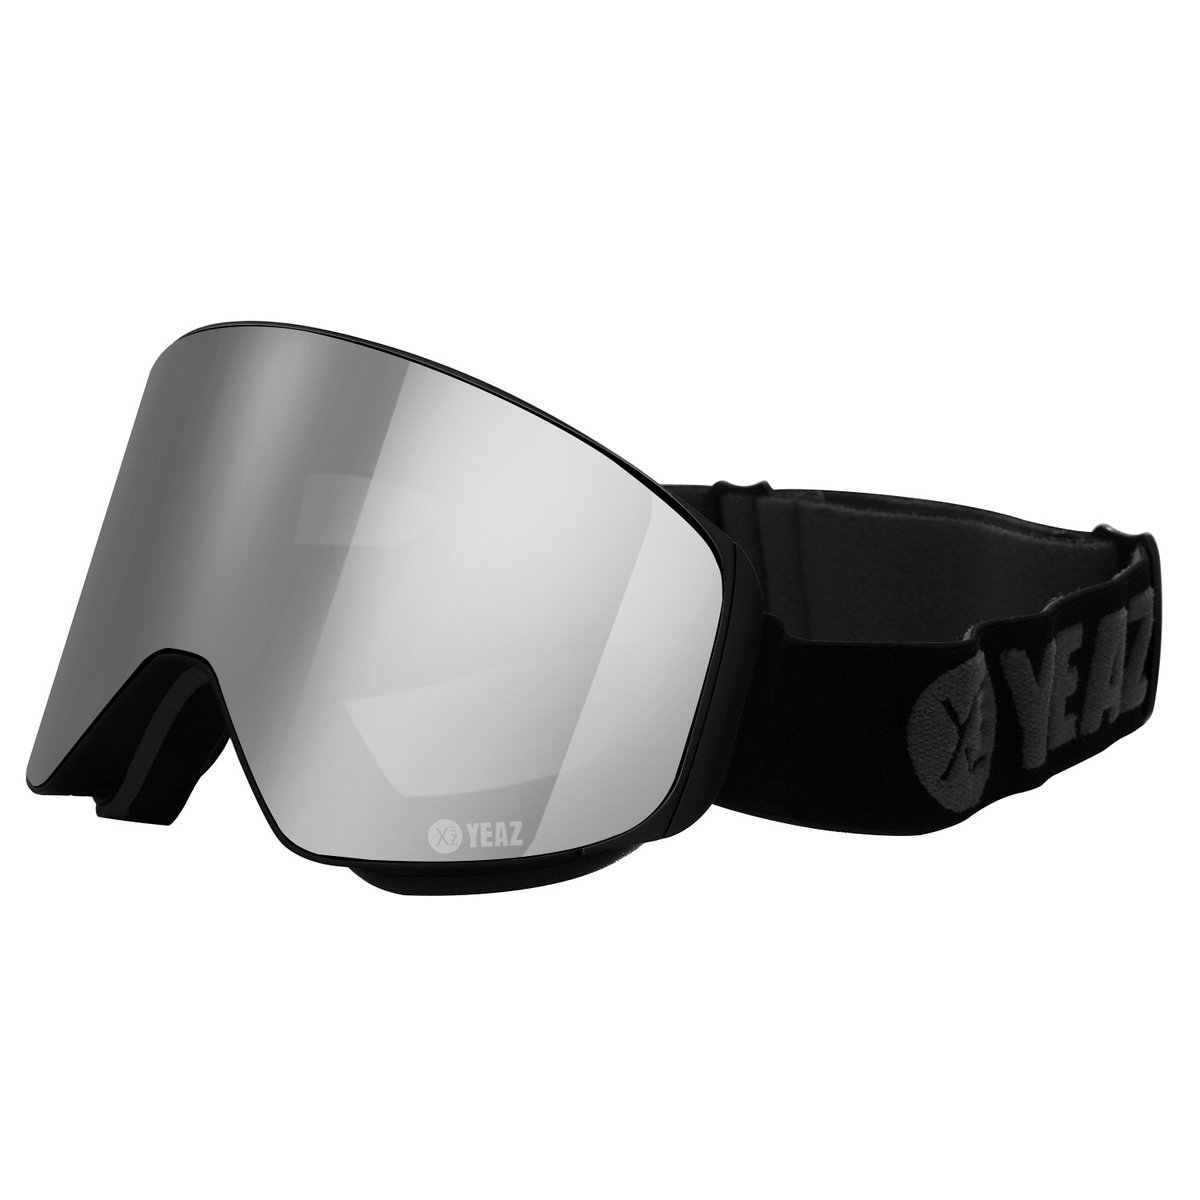 Apex Magnetic Ski Snowboard Goggles Silver Mirrored/Black